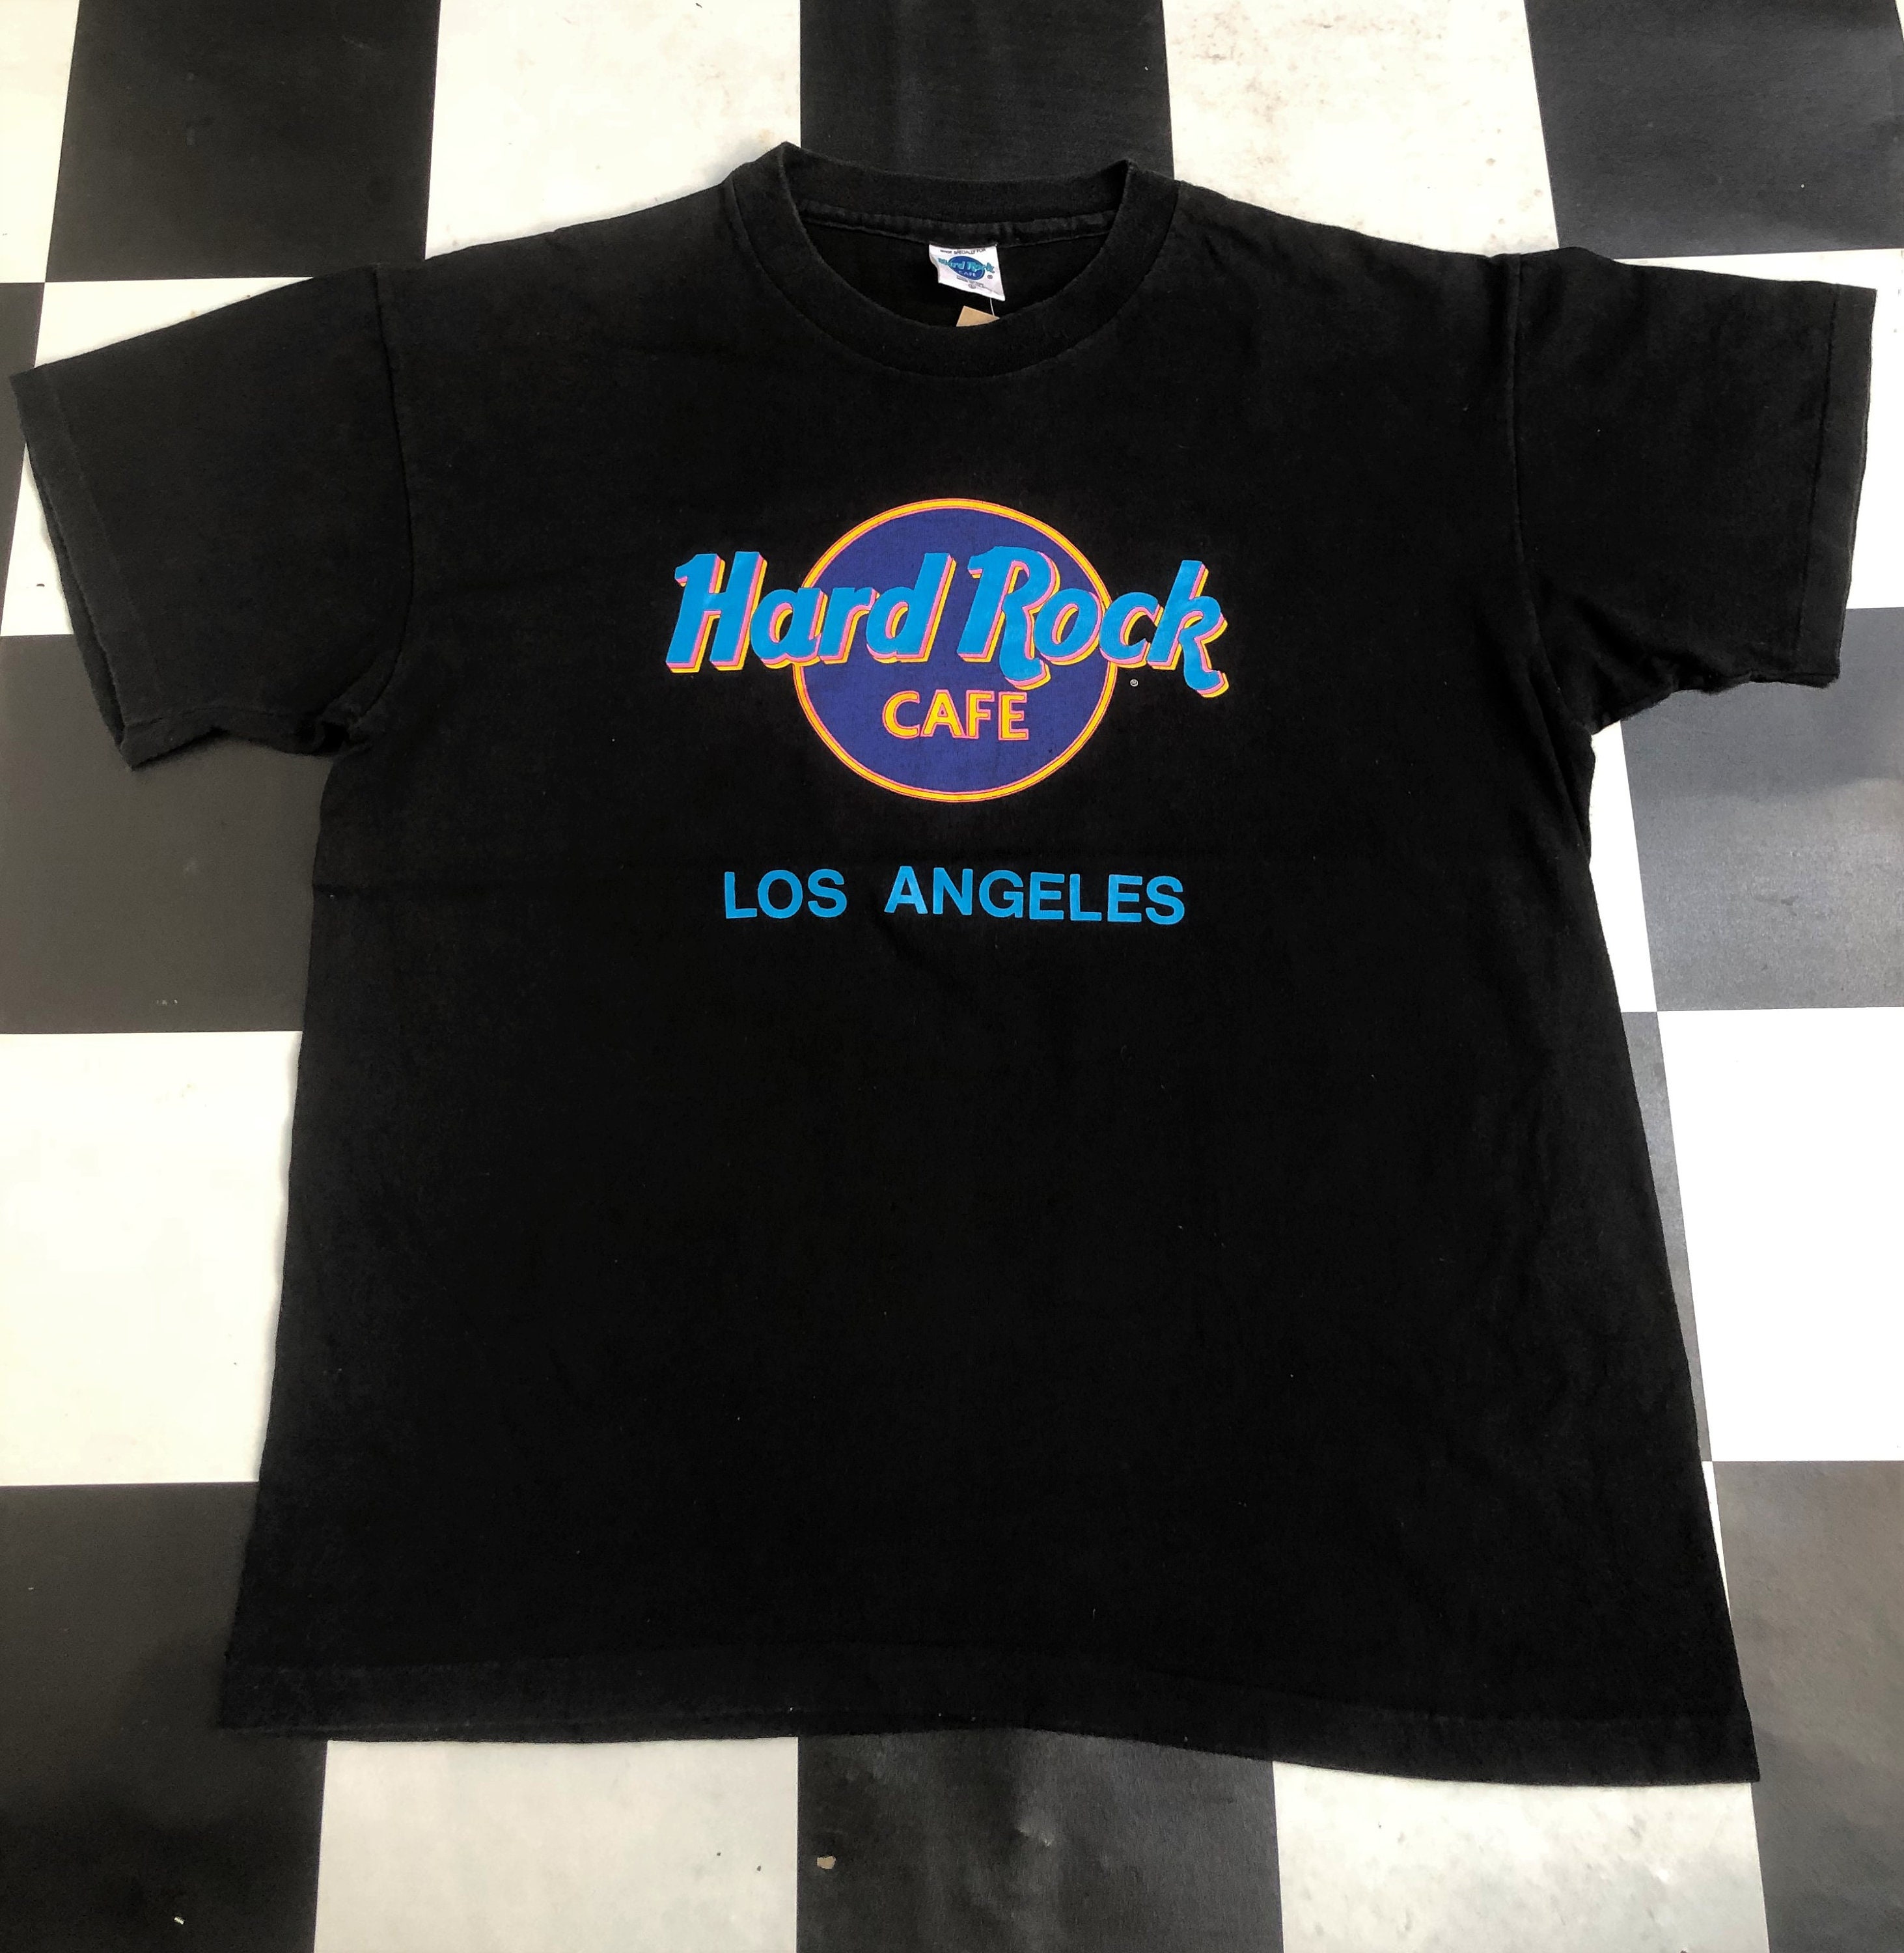 Hard Rock Cafe Shirt - Etsy